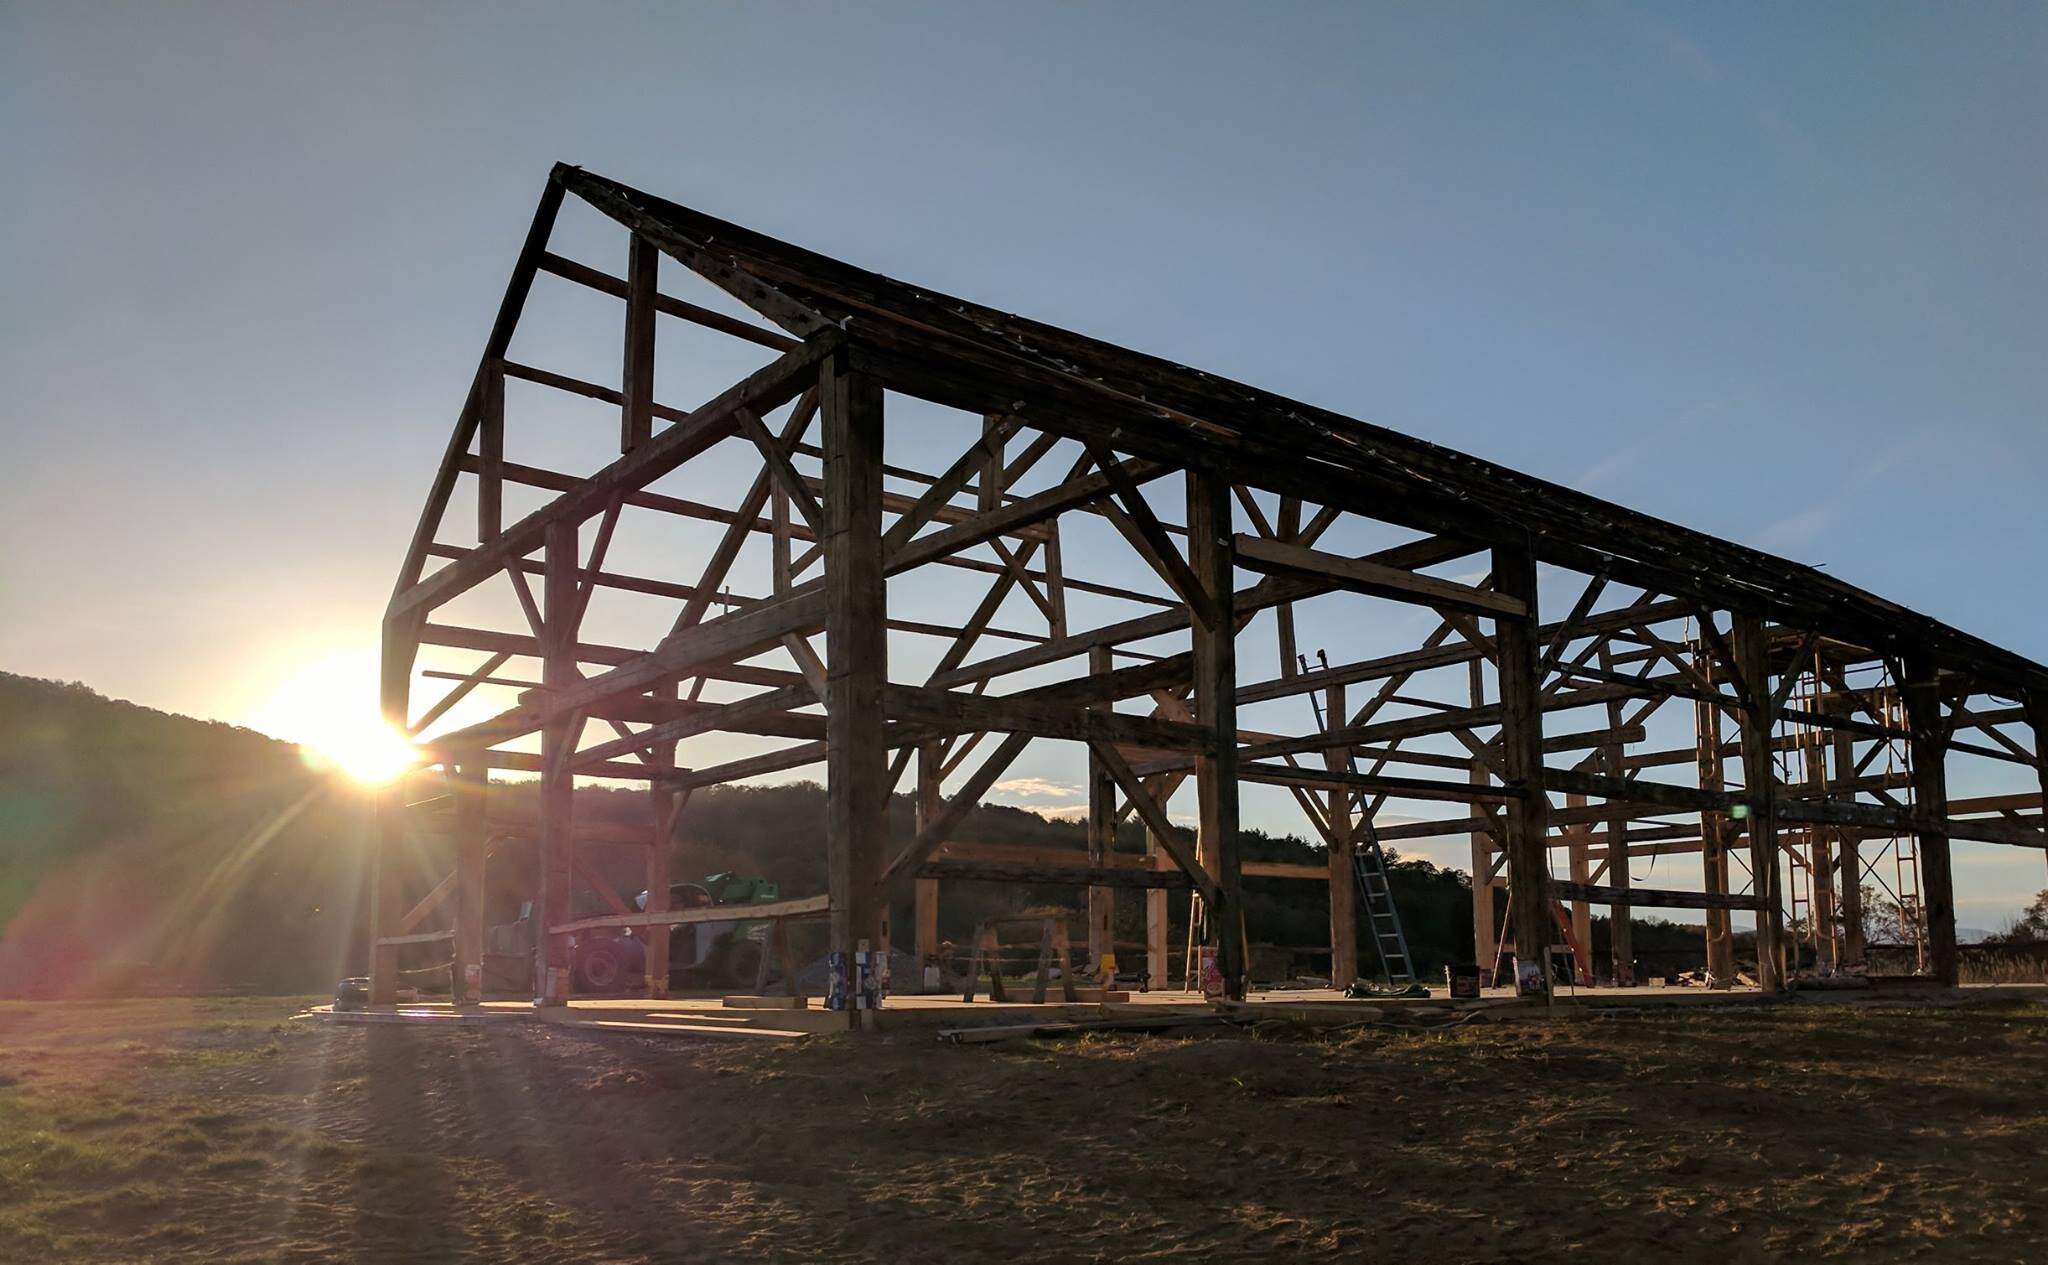 The rebuilt frame in Woodstock VT